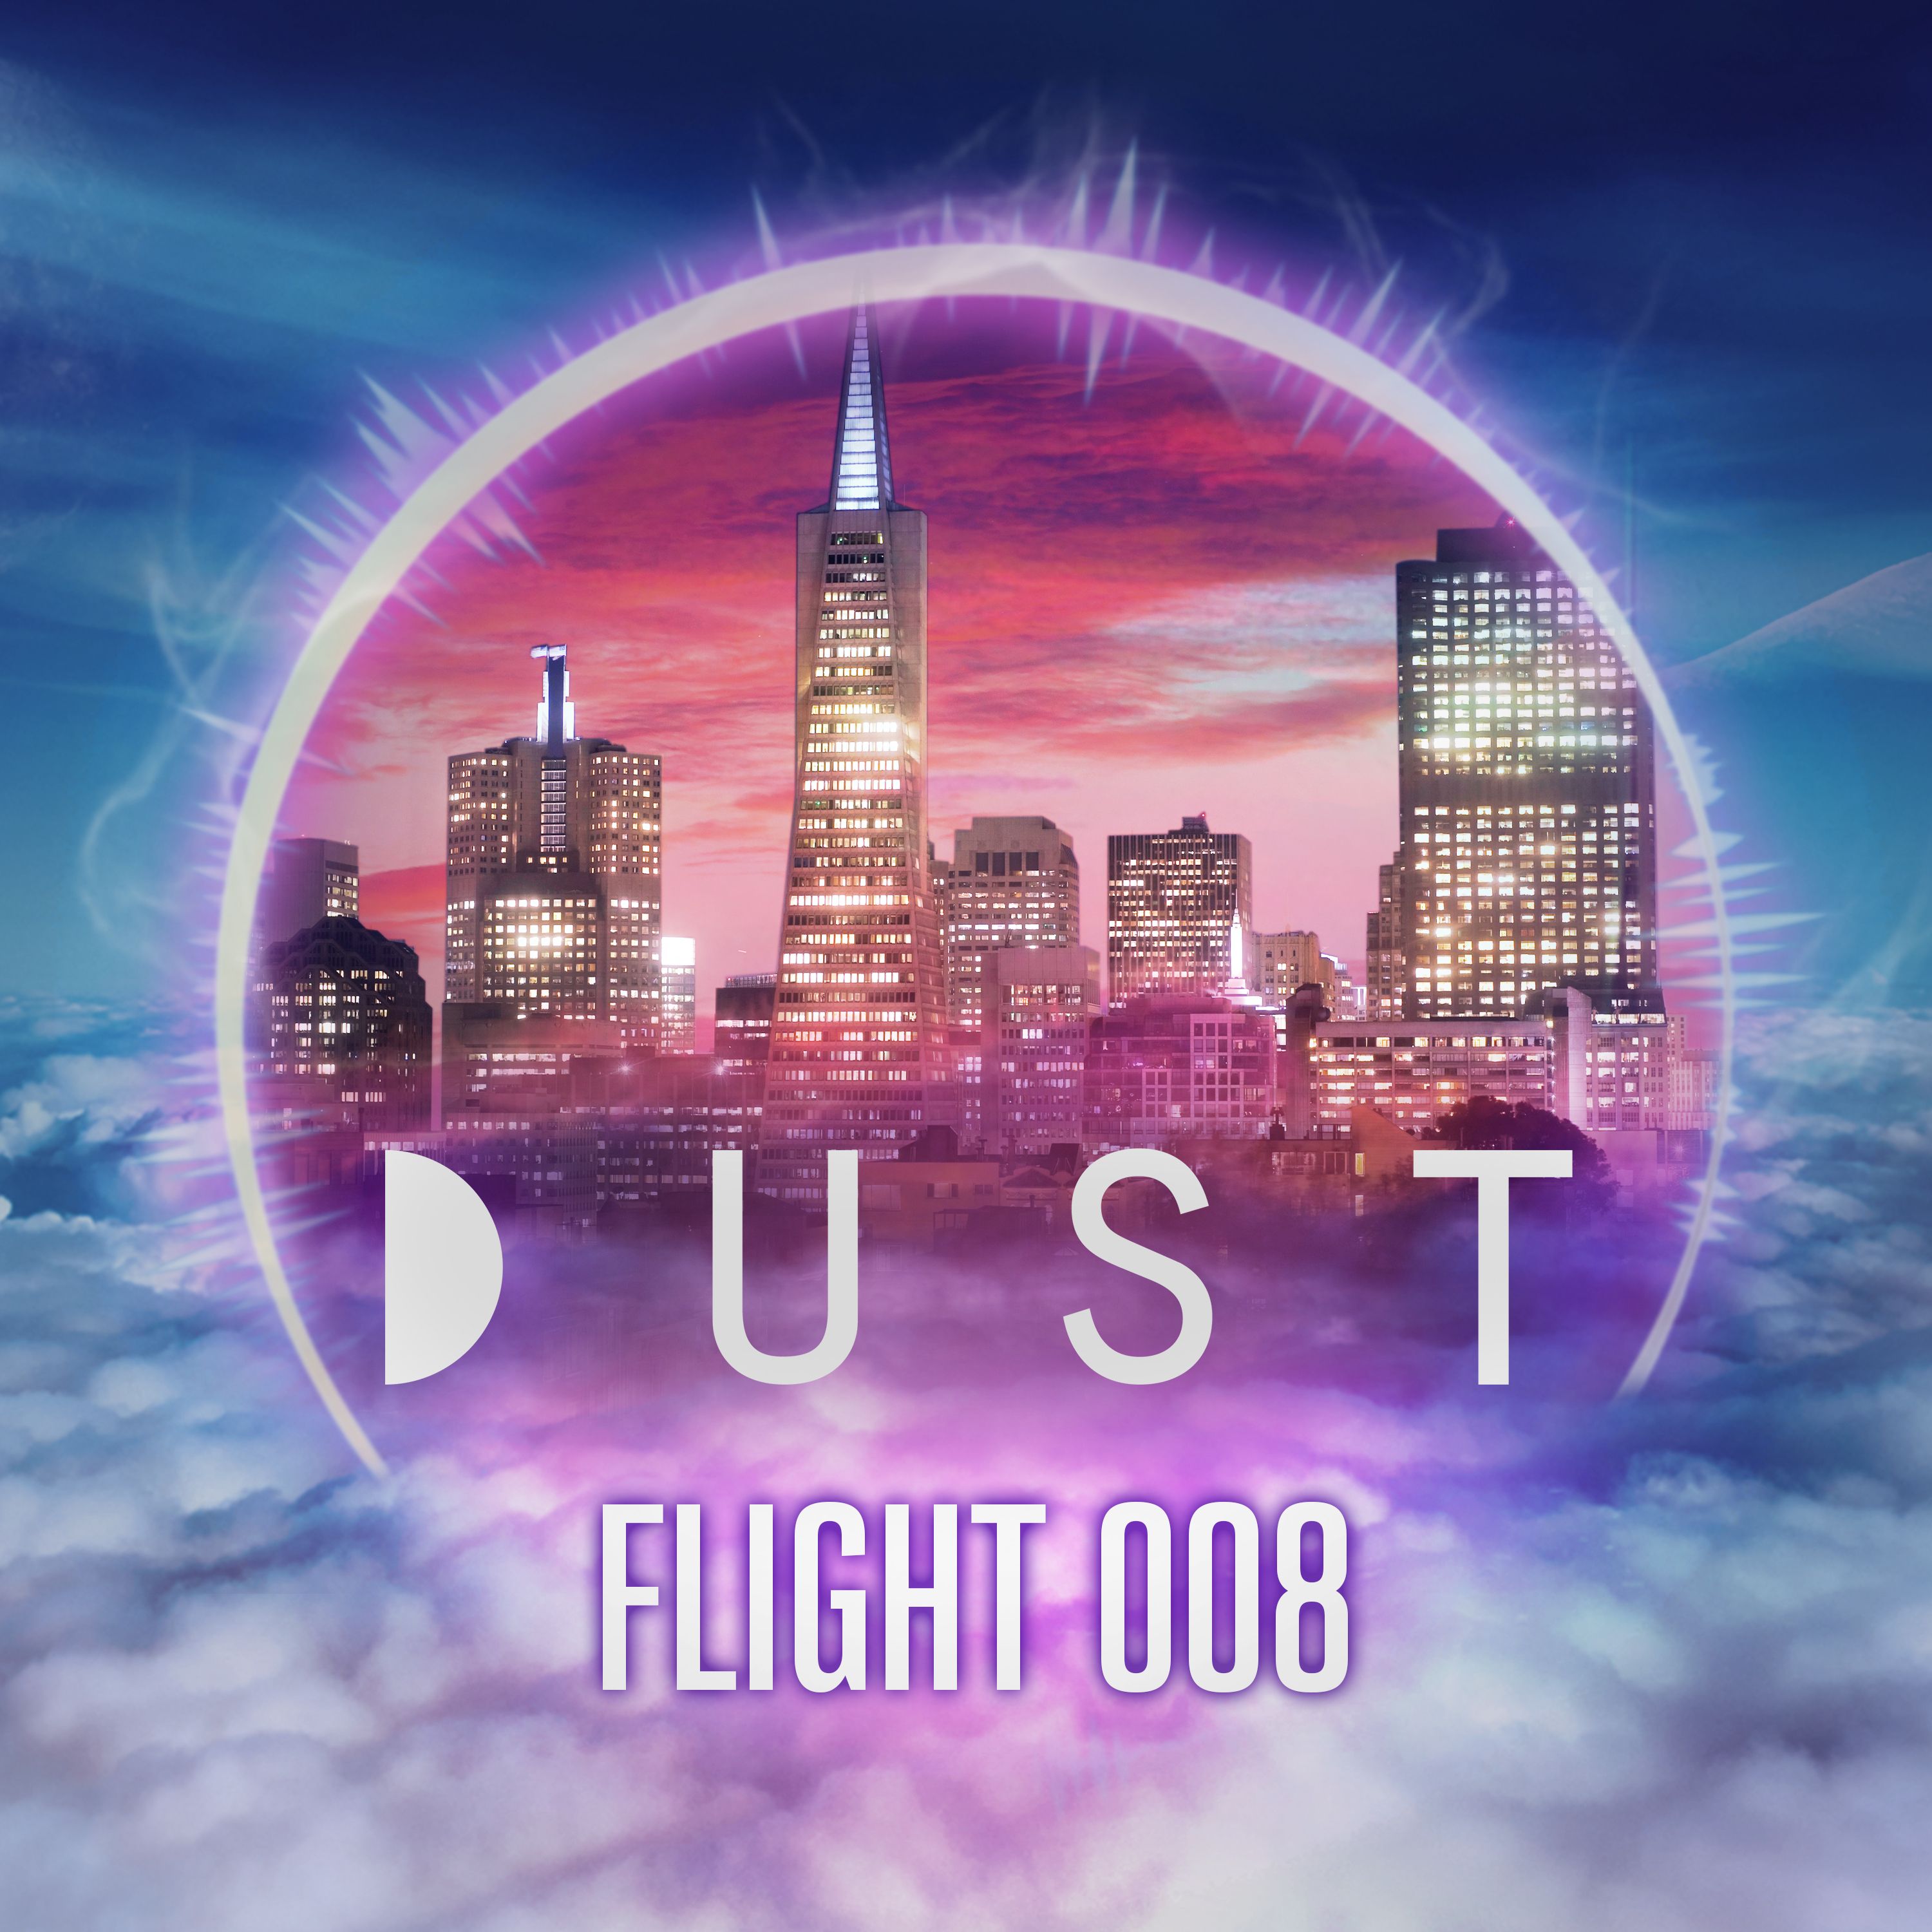 DUST Season Two Trailer | FLIGHT 008